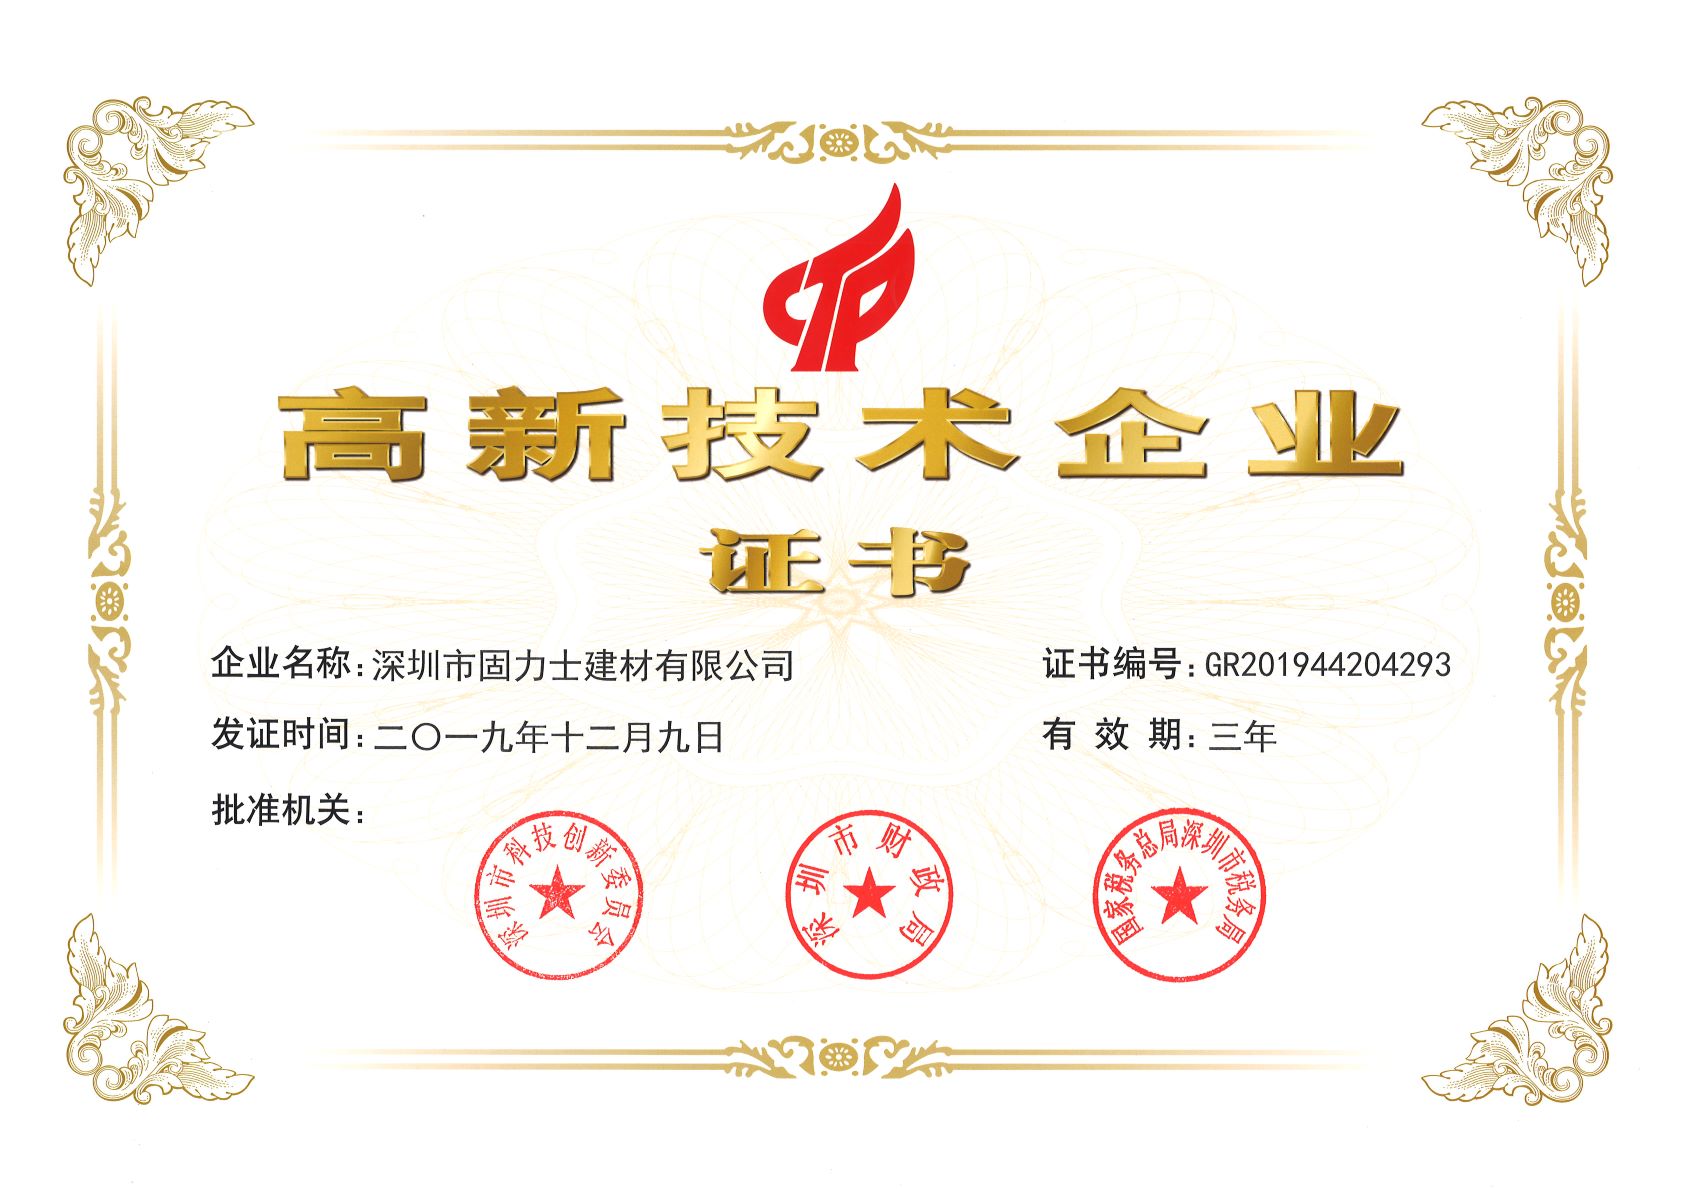 吴兴热烈祝贺深圳市固力士建材有限公司通过高新技术企业认证